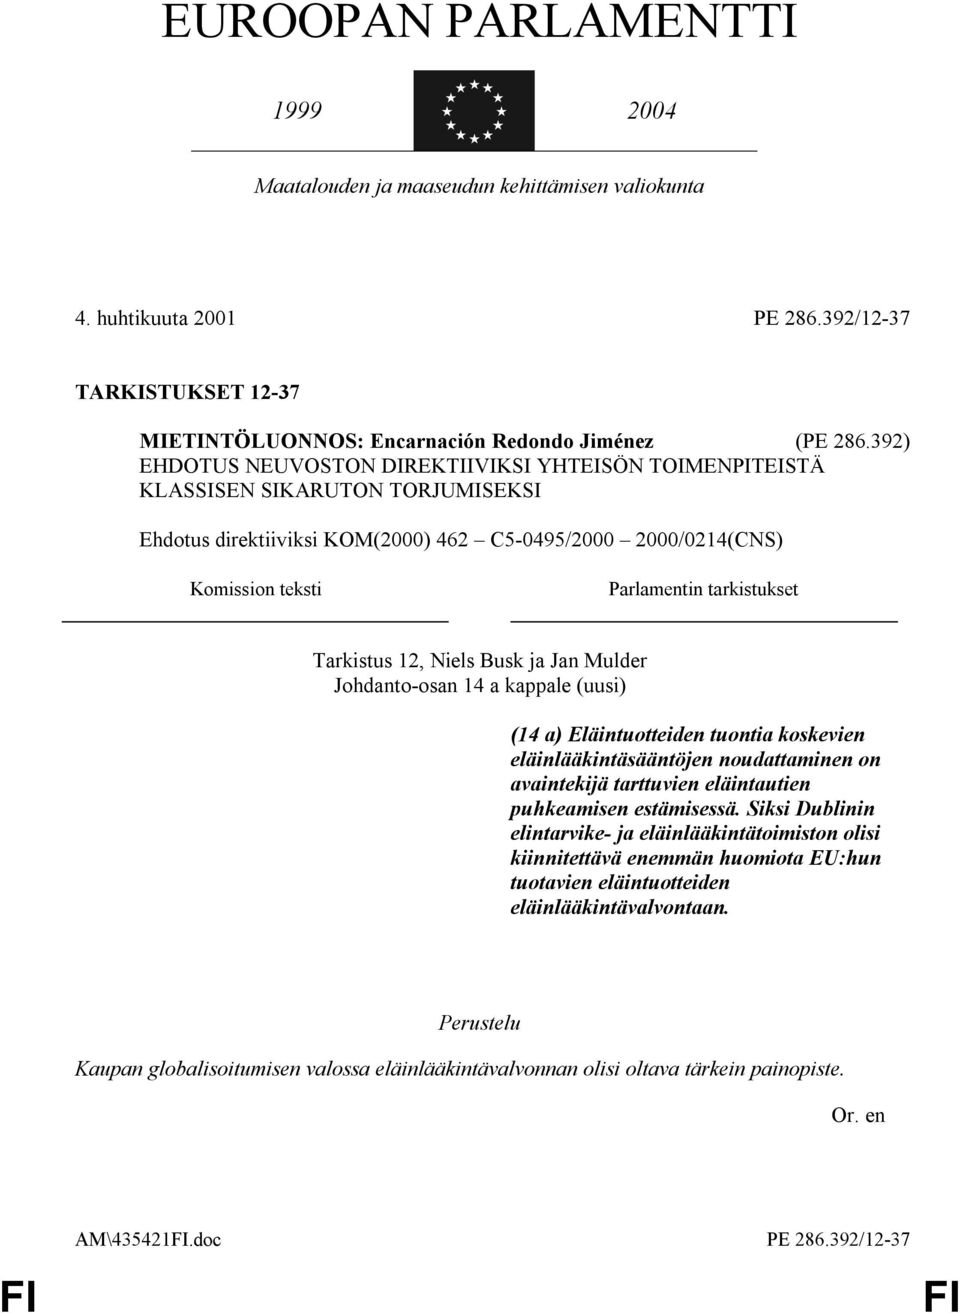 Tarkistus 12, Niels Busk ja Jan Mulder Johdanto-osan 14 a kappale (uusi) (14 a) Eläintuotteiden tuontia koskevien eläinlääkintäsääntöjen noudattaminen on avaintekijä tarttuvien eläintautien